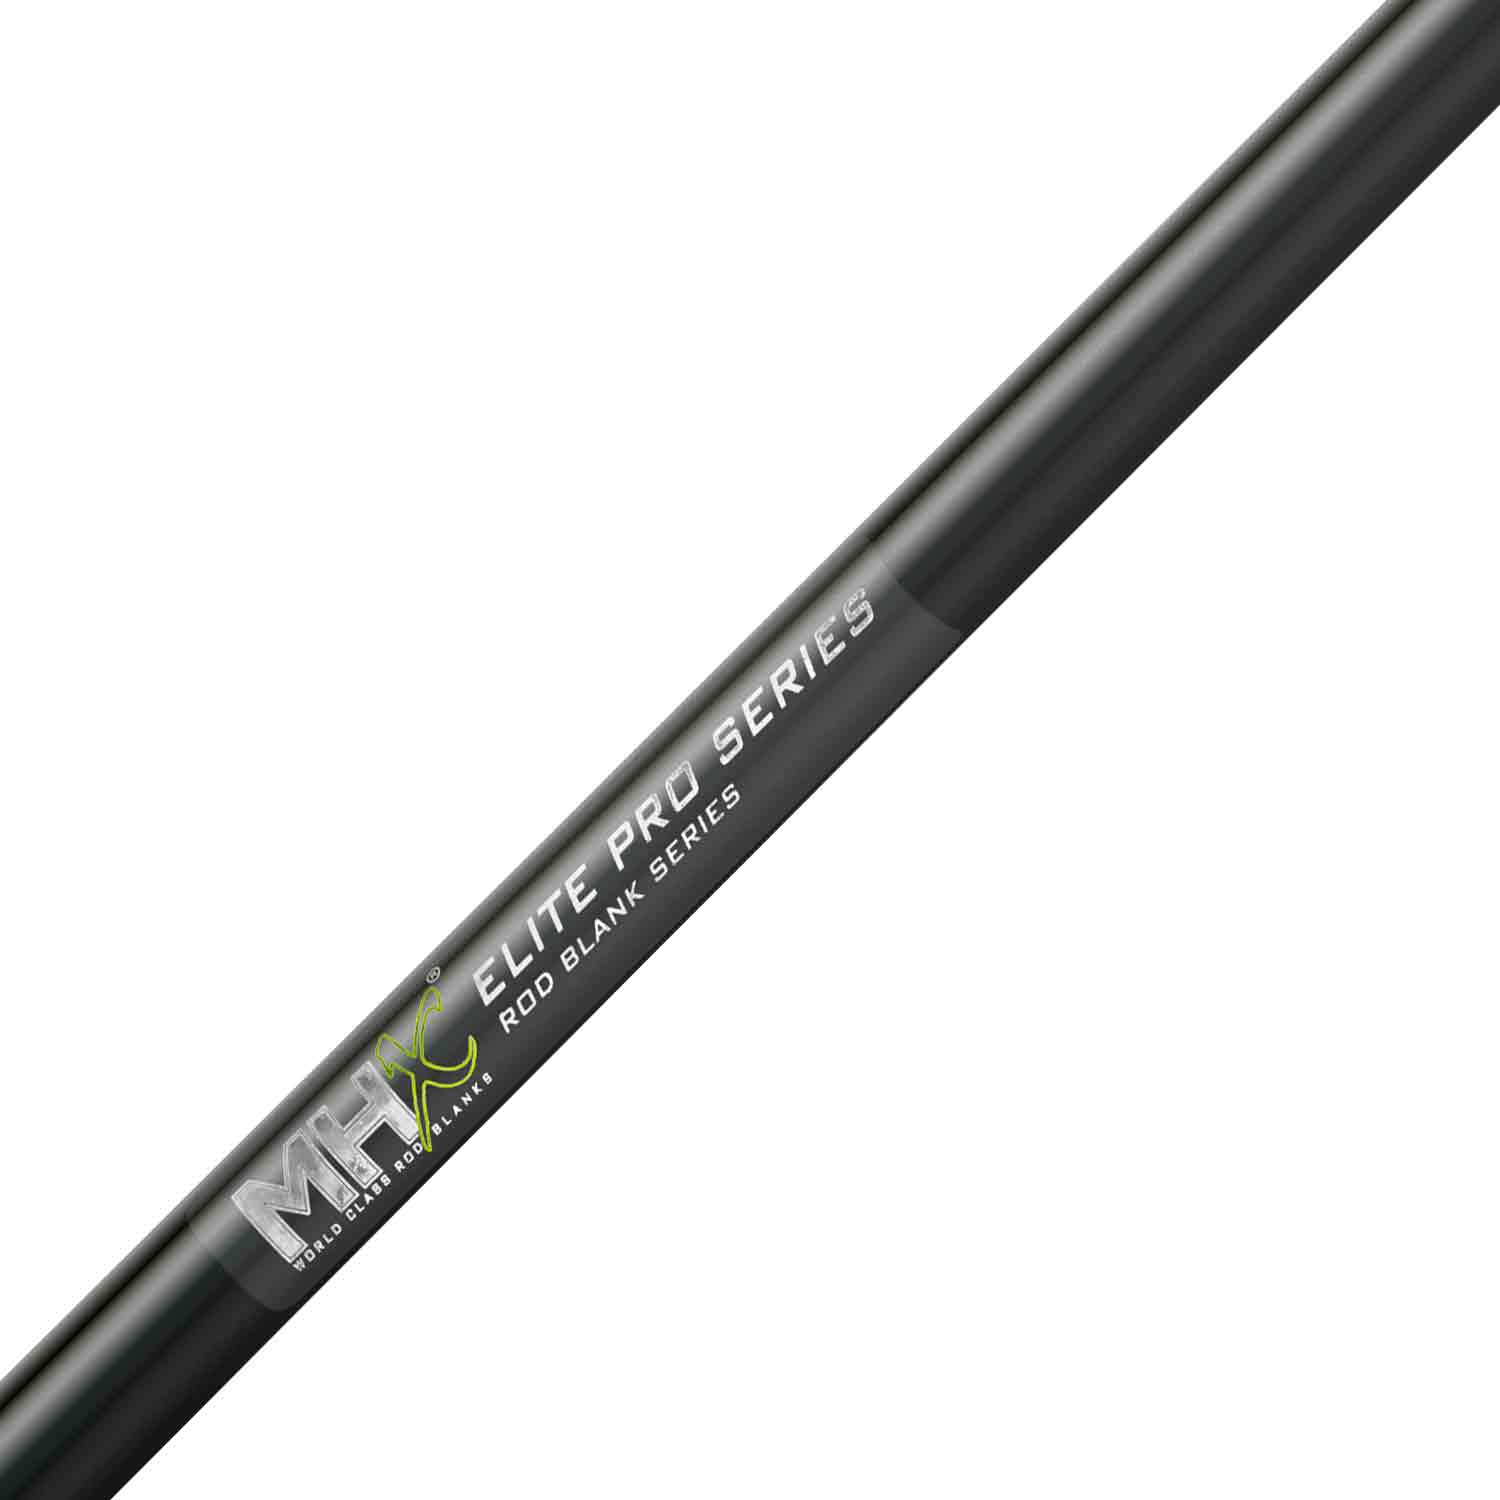 MHX 6'9" Med-Light Elite Pro Rod Blank - NEPS81MLXF-MHX